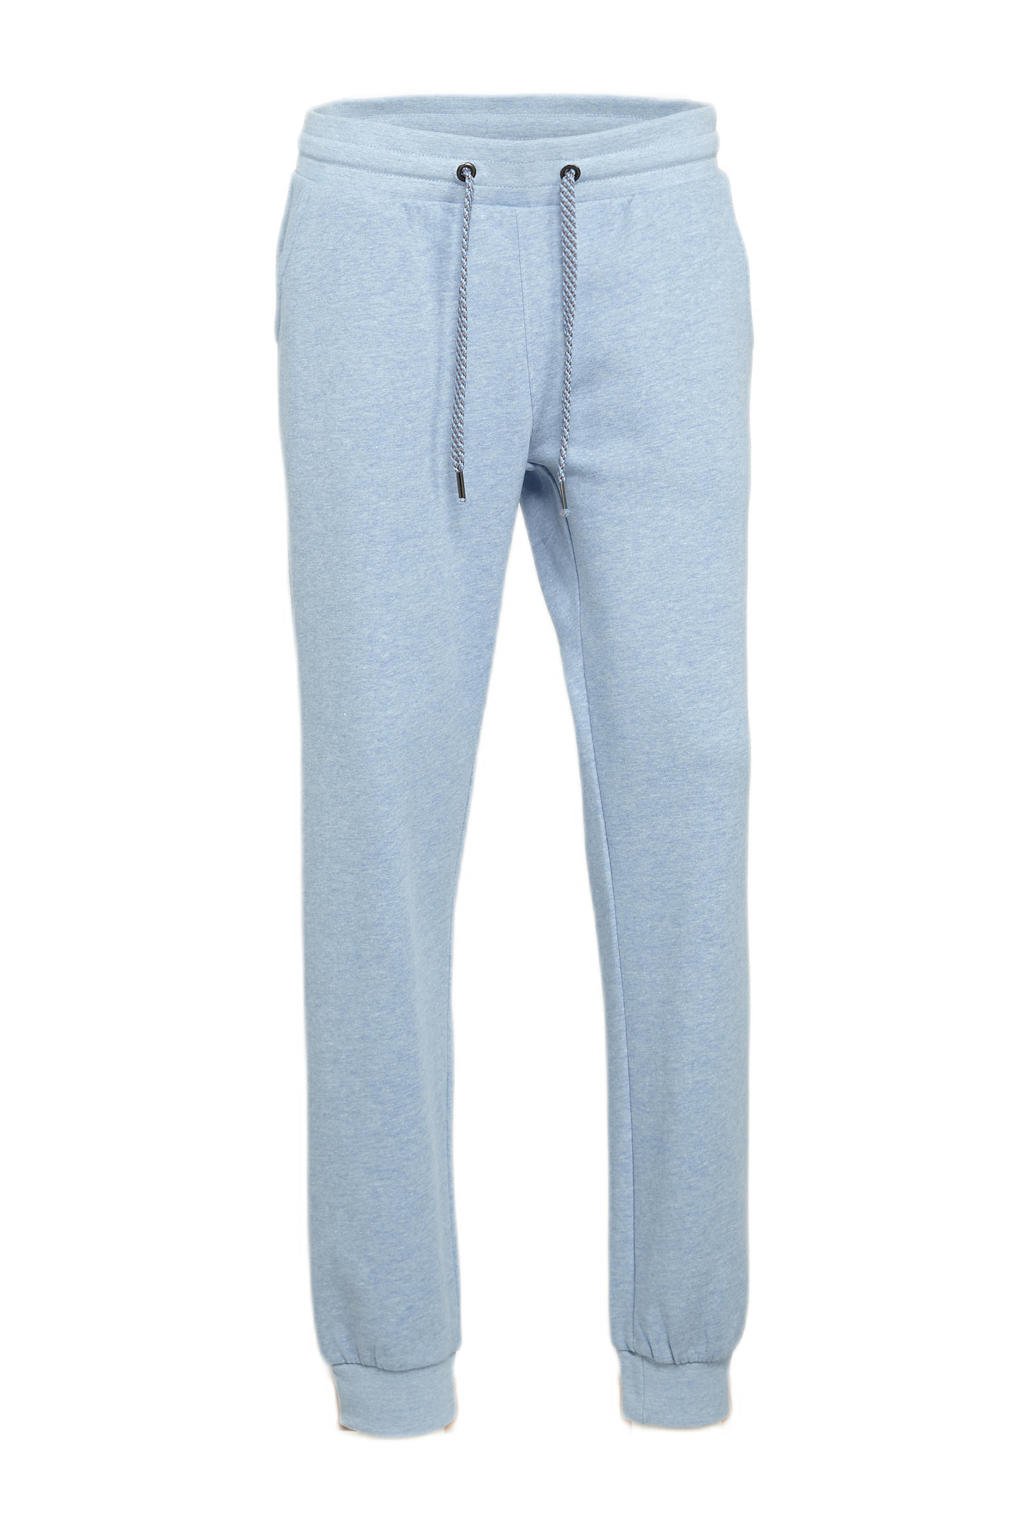 Lichtblauwe dames Donnay trainingsbroek van polyester met regular fit, regular waist en elastische tailleband met koord